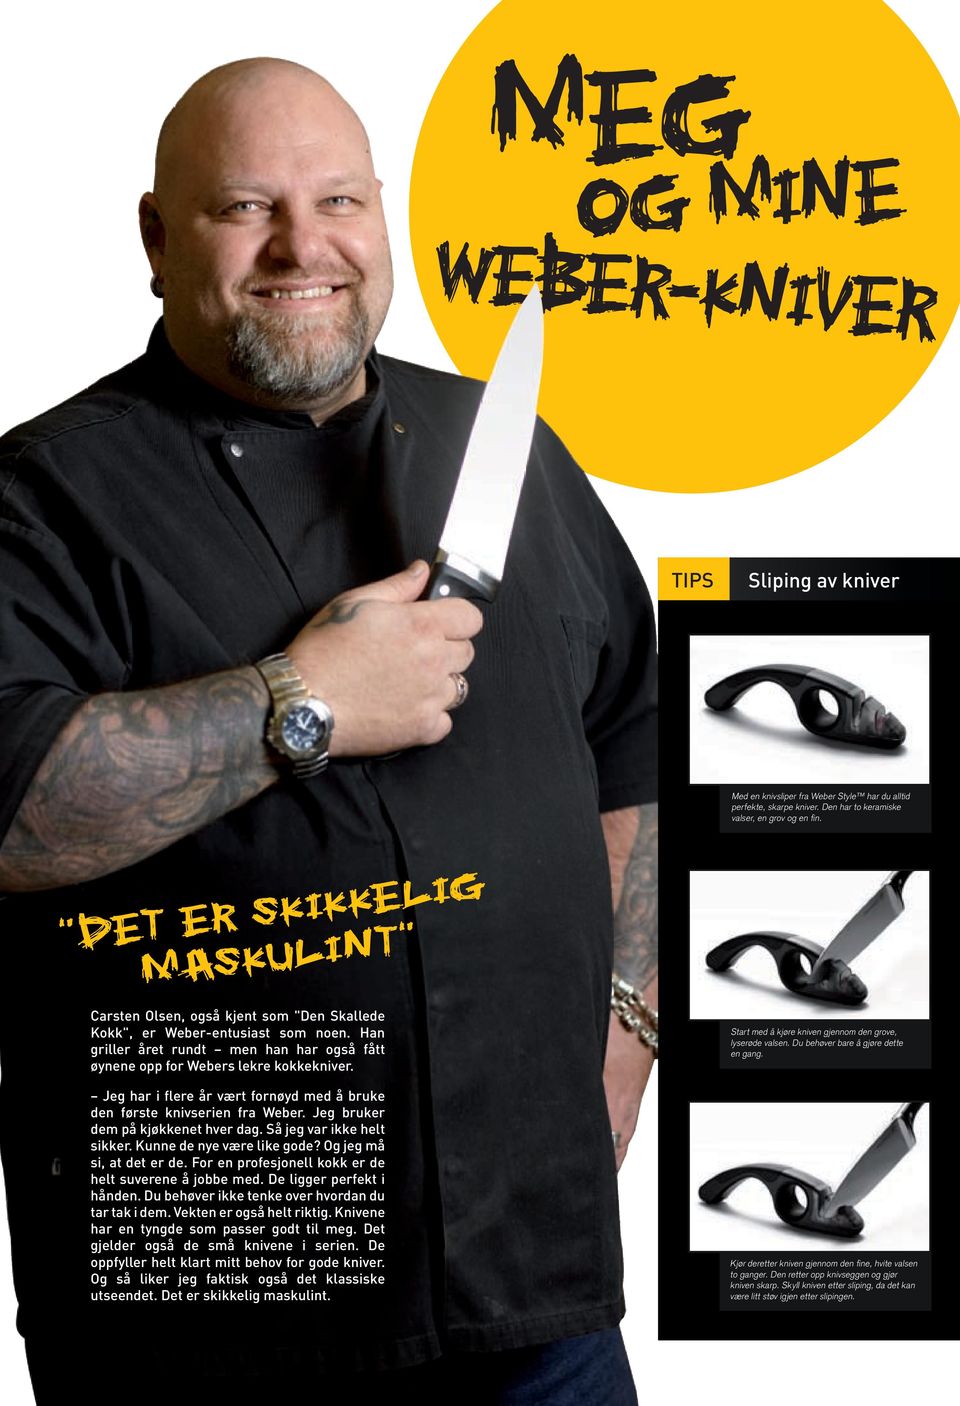 Jeg har i flere år vært fornøyd med å bruke den første knivserien fra Weber. Jeg bruker dem på kjøkkenet hver dag. Så jeg var ikke helt sikker. Kunne de nye være like gode? Og jeg må si, at det er de.